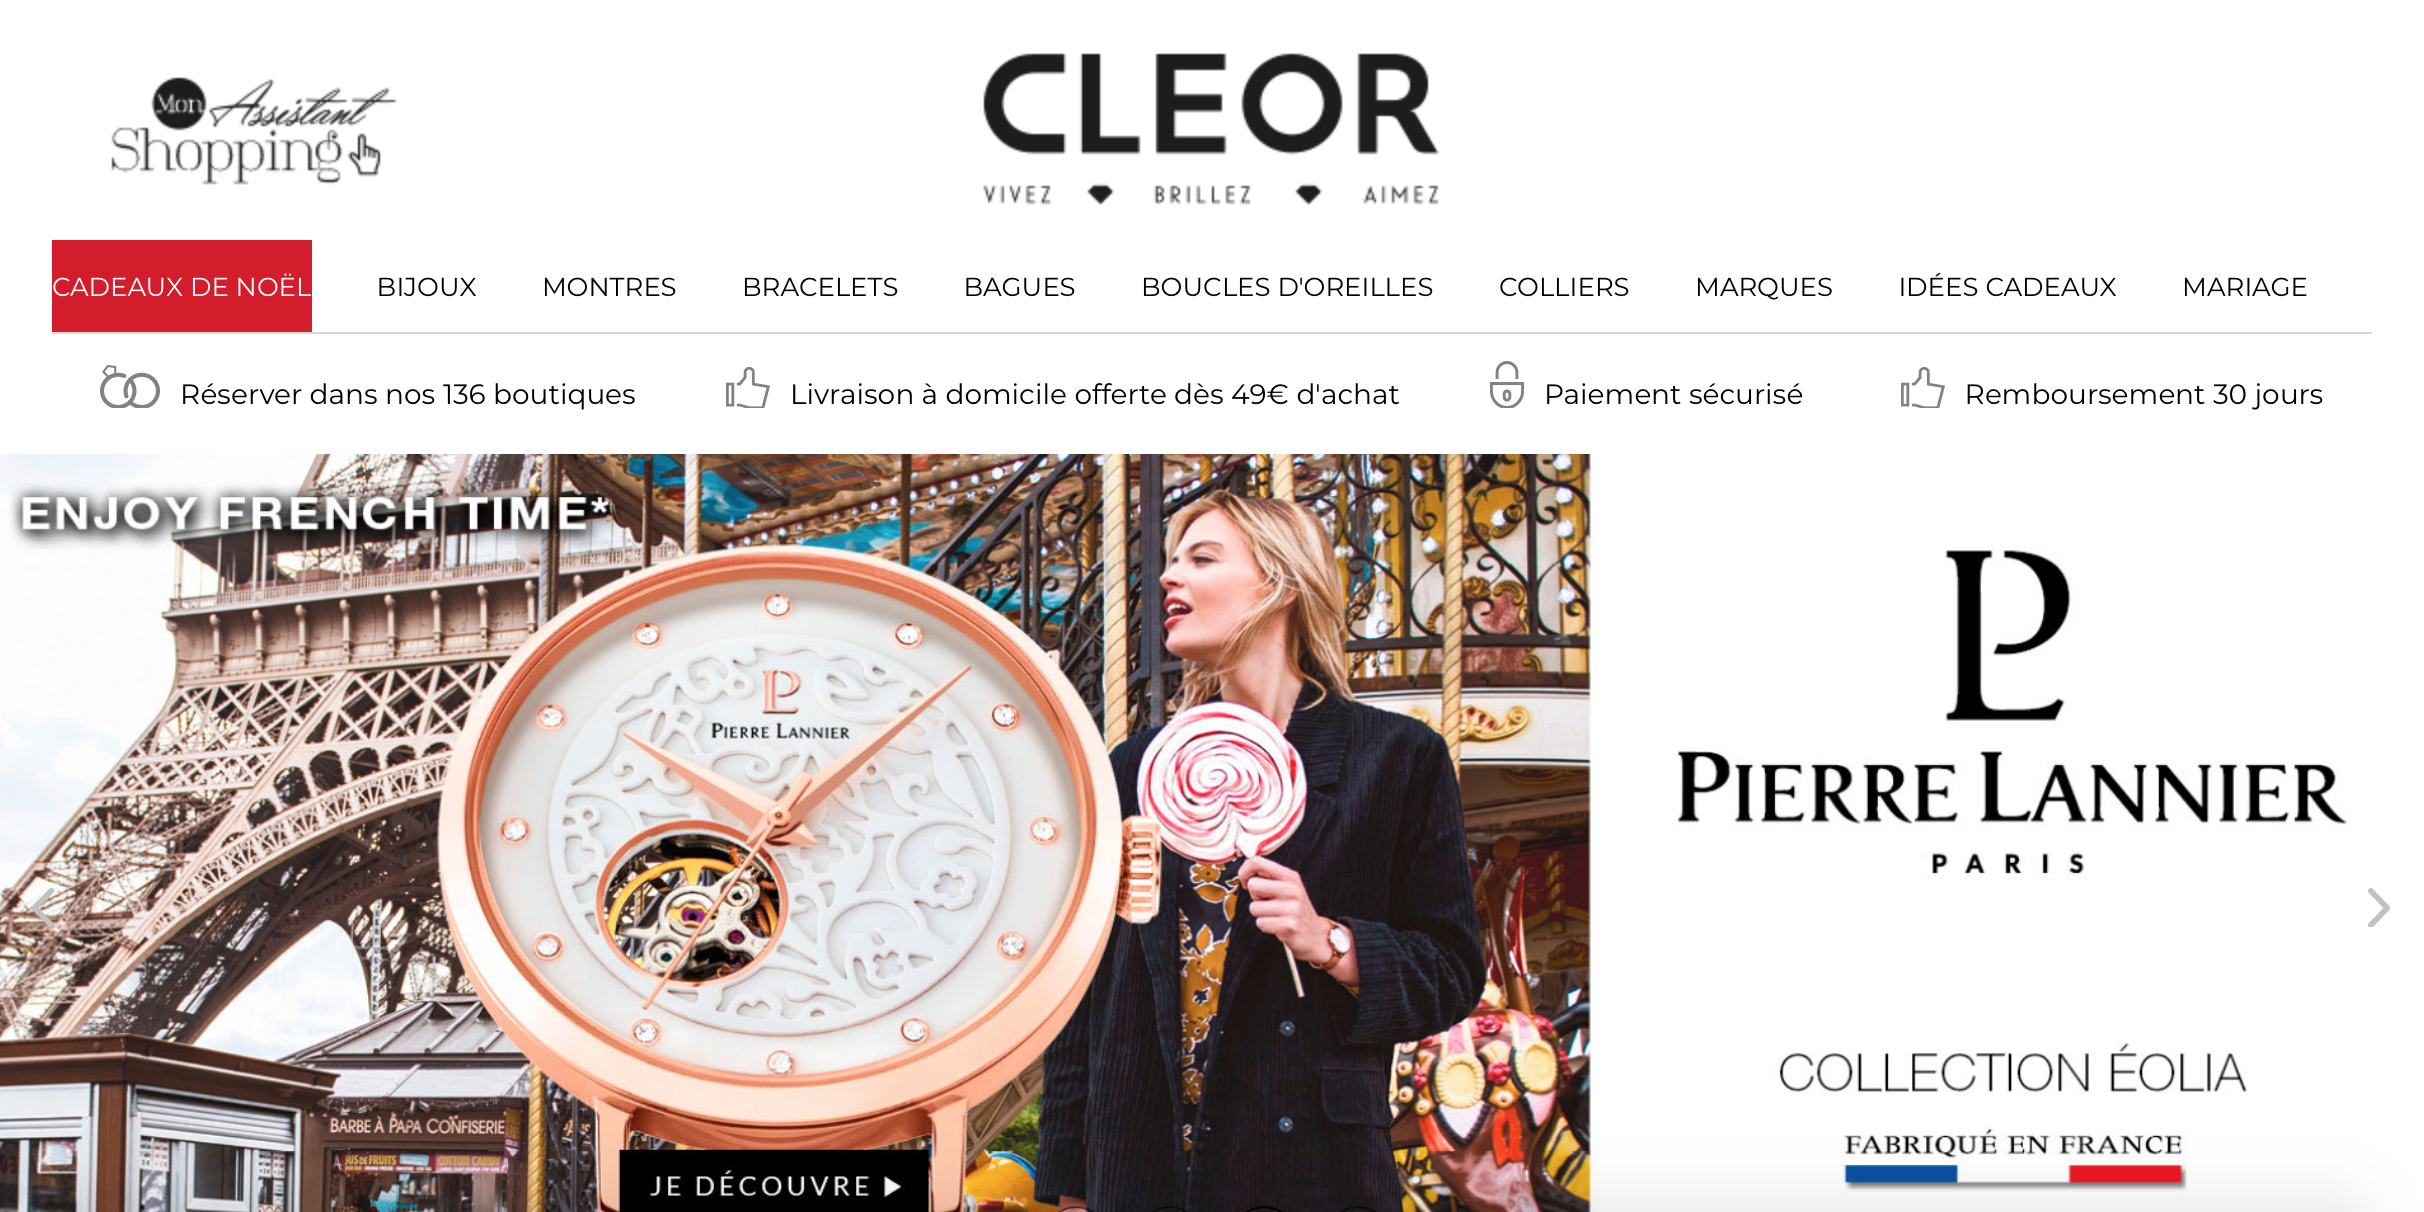 意大利珠宝钟表集团 Morellato 以5000万欧元收购法国珠宝零售商 Cleor，整体收入接近3亿欧元